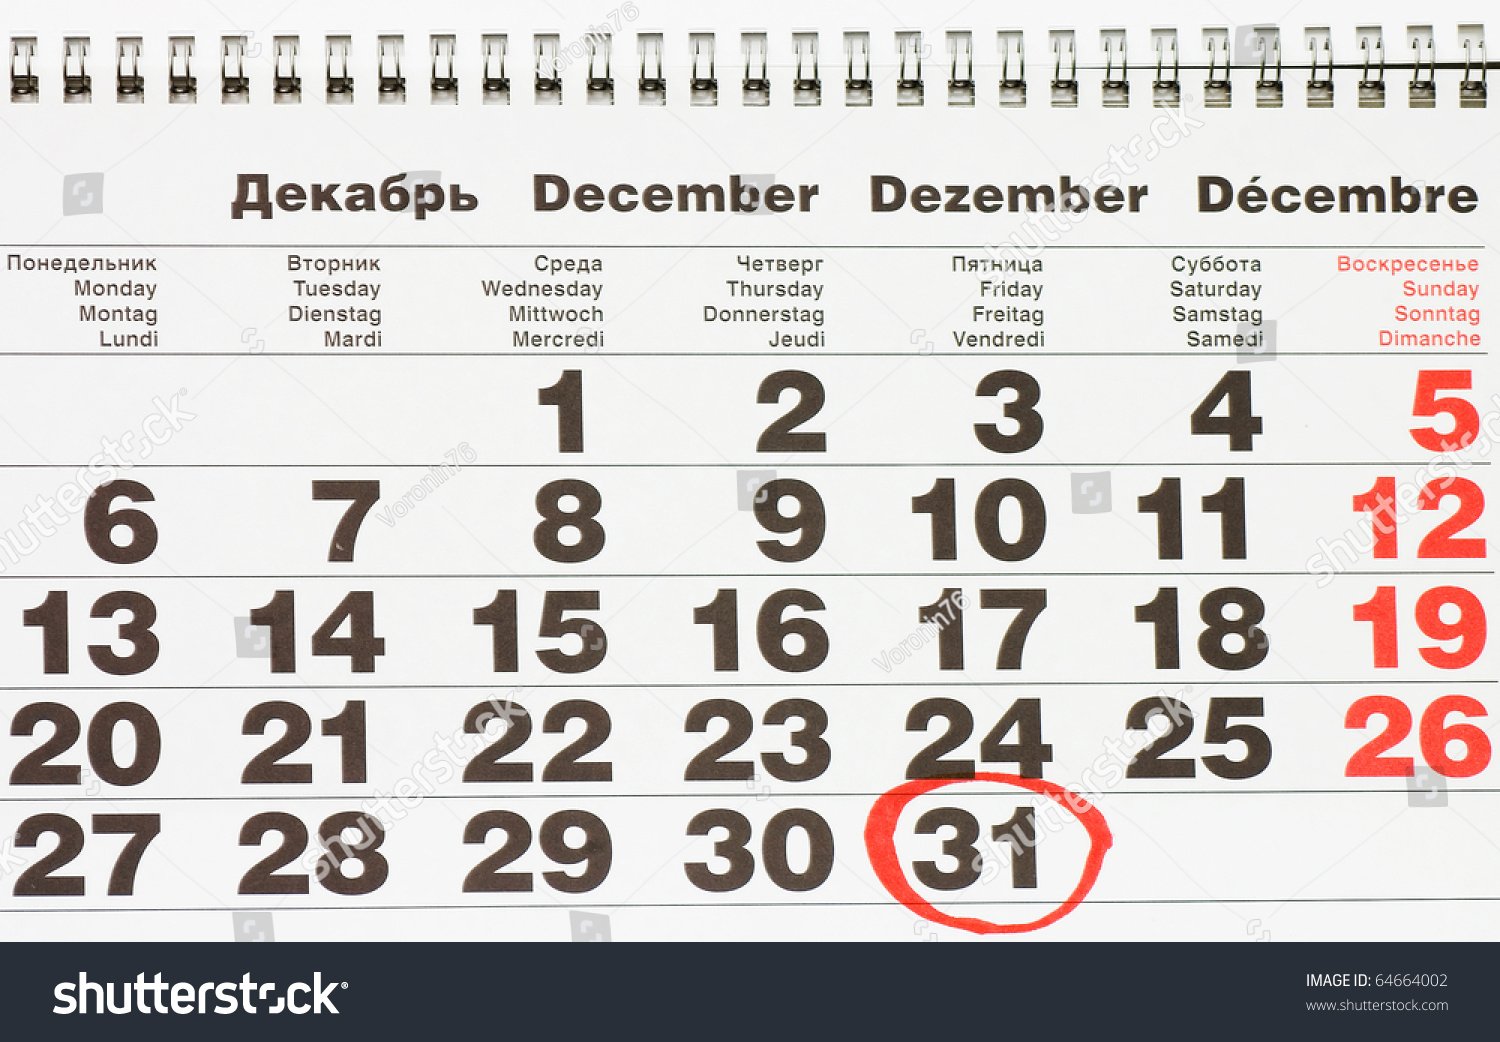 Срок до 31 декабря. Календарь 31 декабря. Календарь с обведенной датой. Календарь с выделенным днем. Календарь с выделенной датой.